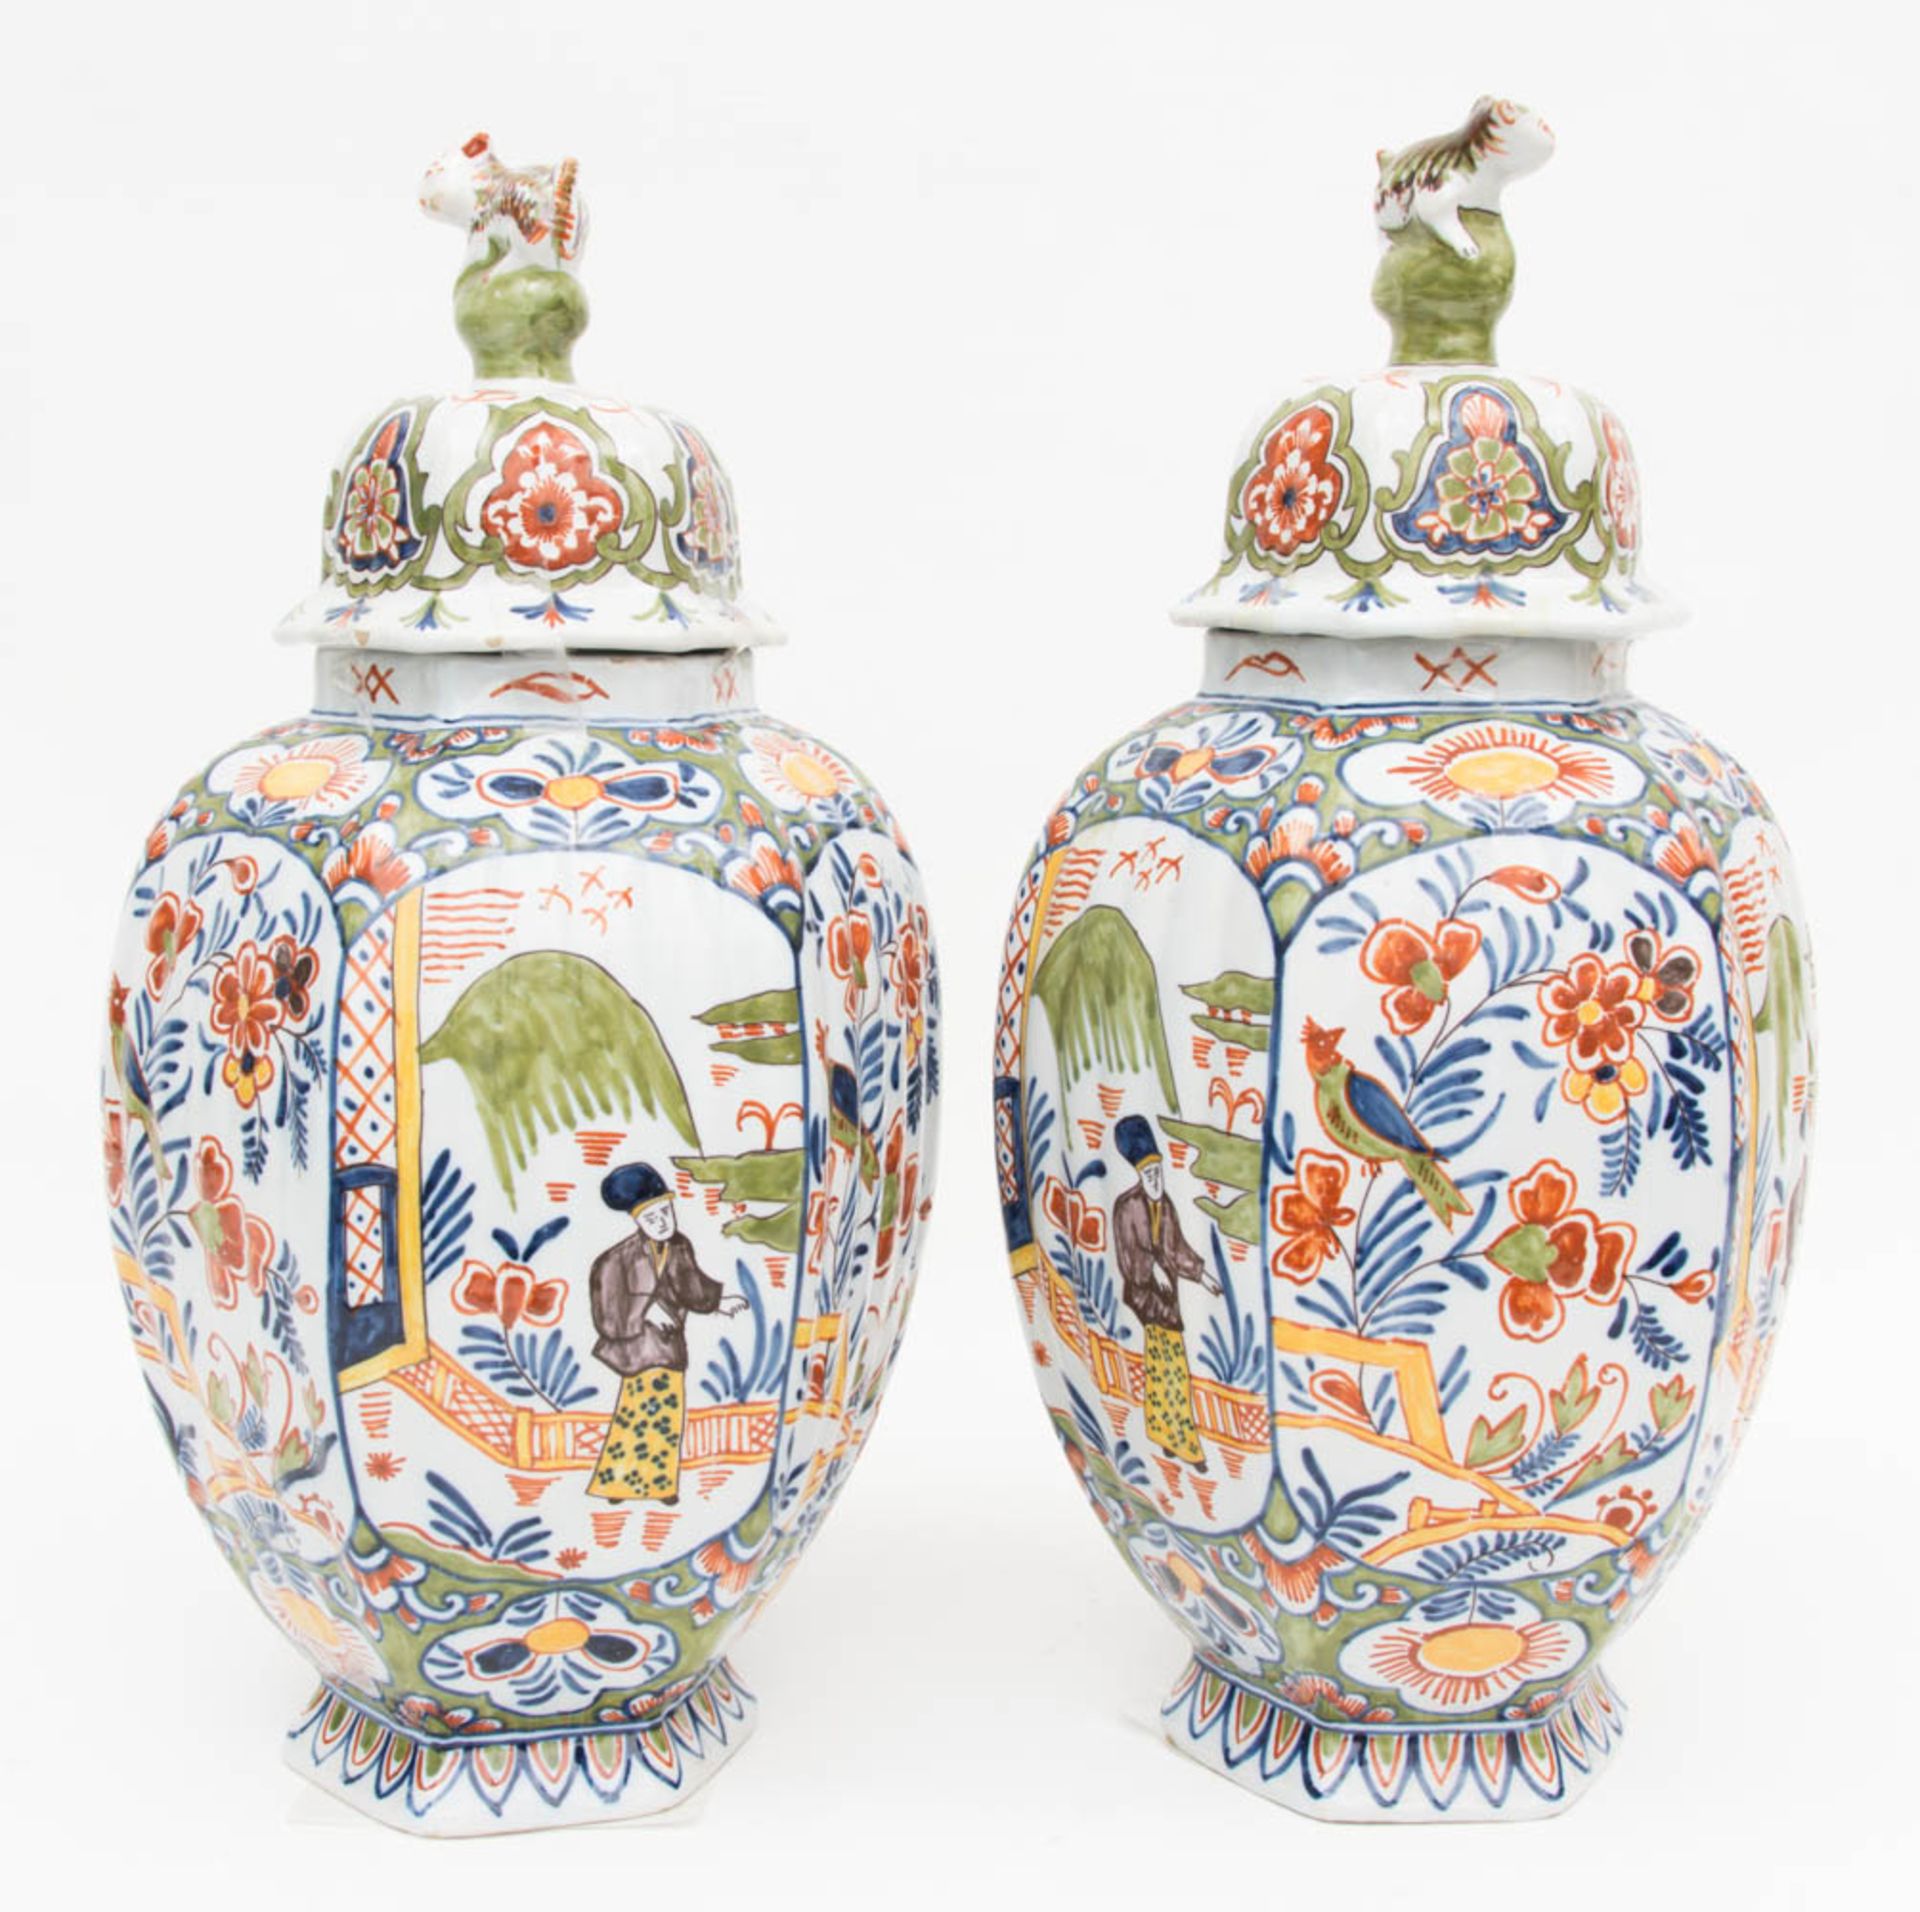 Zwei Delfter Vasen, bunt staffiert, um 1650.